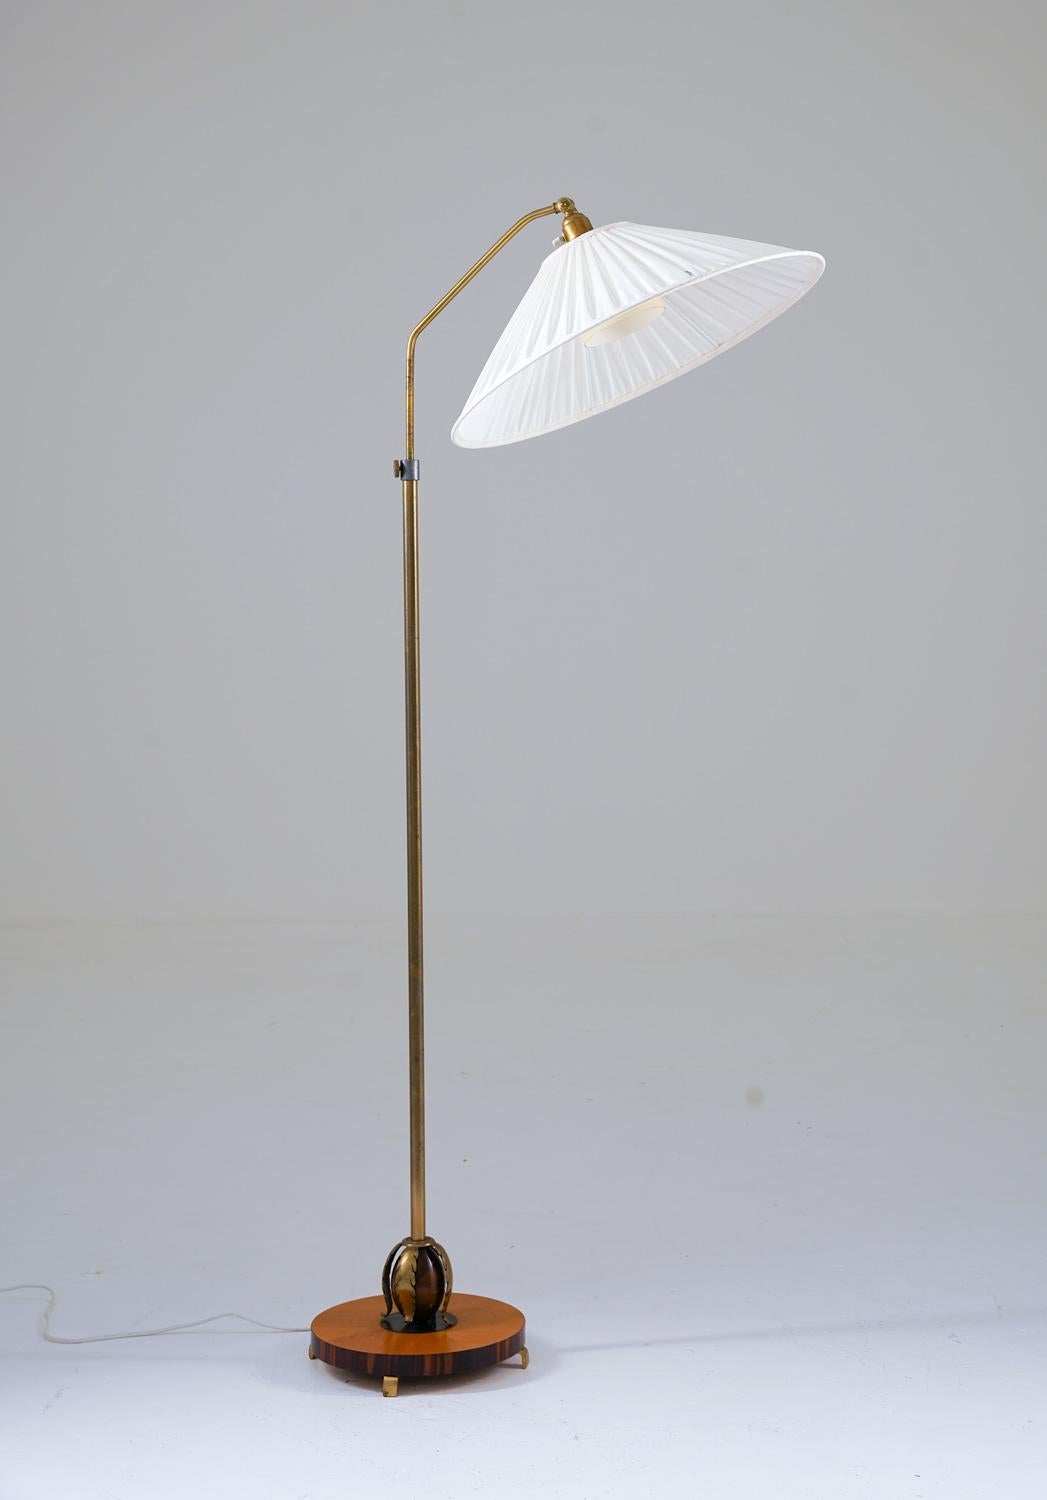 Hübsche Art-Déco-Stehlampe, hergestellt in Schweden, 1940er Jahre. 
Die Lampe besteht aus einem Sockel aus Zebrano und Ulme mit blattförmigen Ornamenten aus Messing. Der Sockel trägt die Messingstange, die in der Höhe verstellbar ist. 
Die